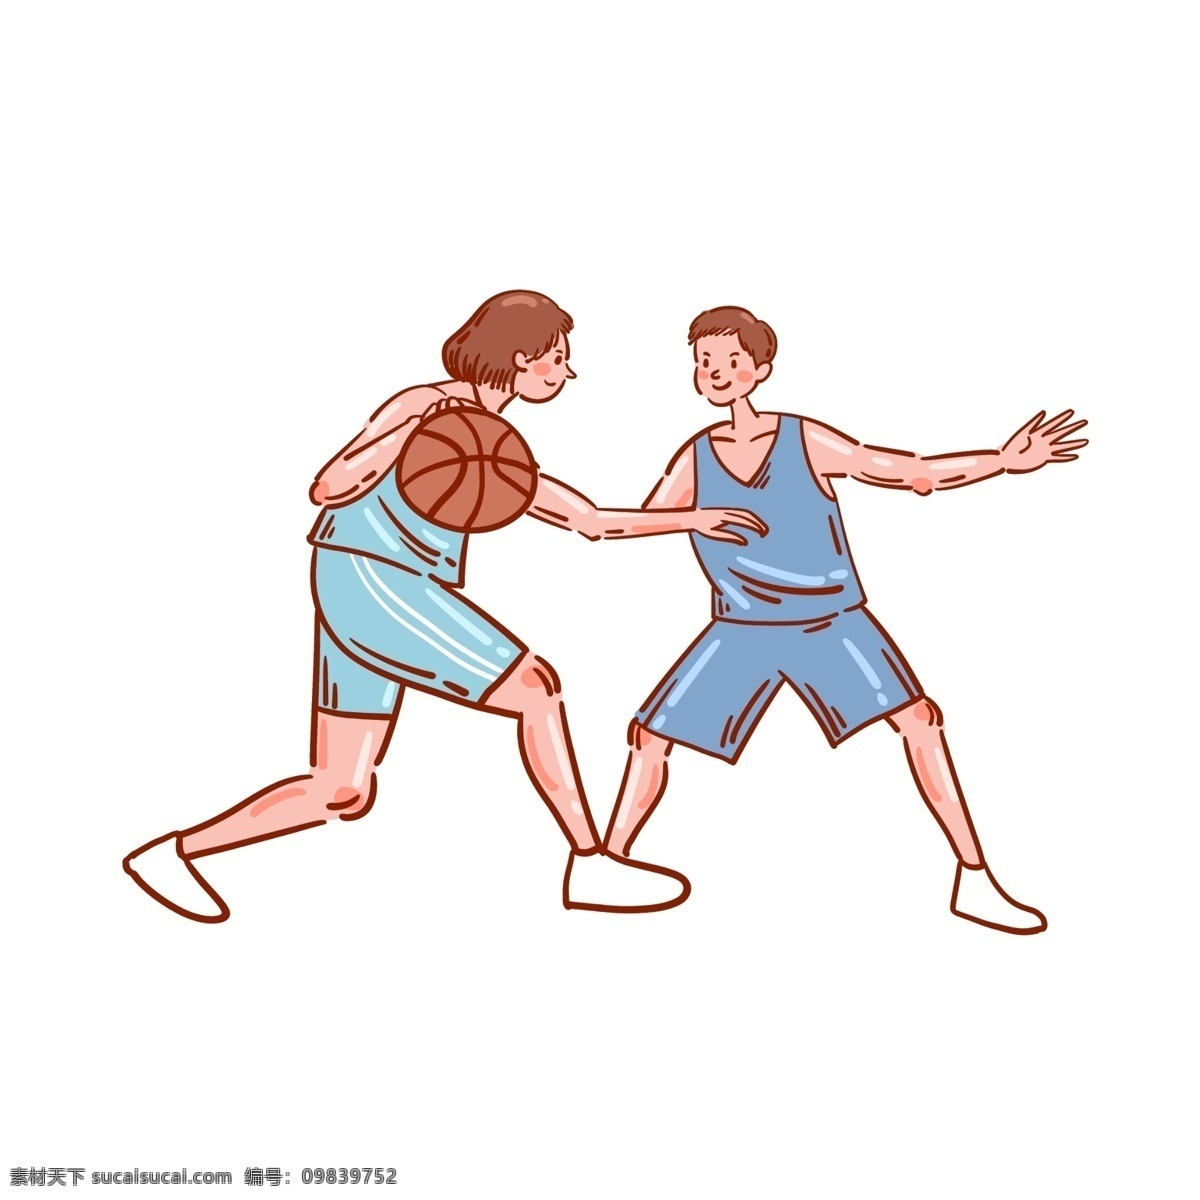 卡通 矢量 免 抠 可爱 篮球 人物 免抠 打篮球 女生 男生 蓝色 篮球衣 小白鞋 运动 夏季 快乐 开心 短发 情侣 运球